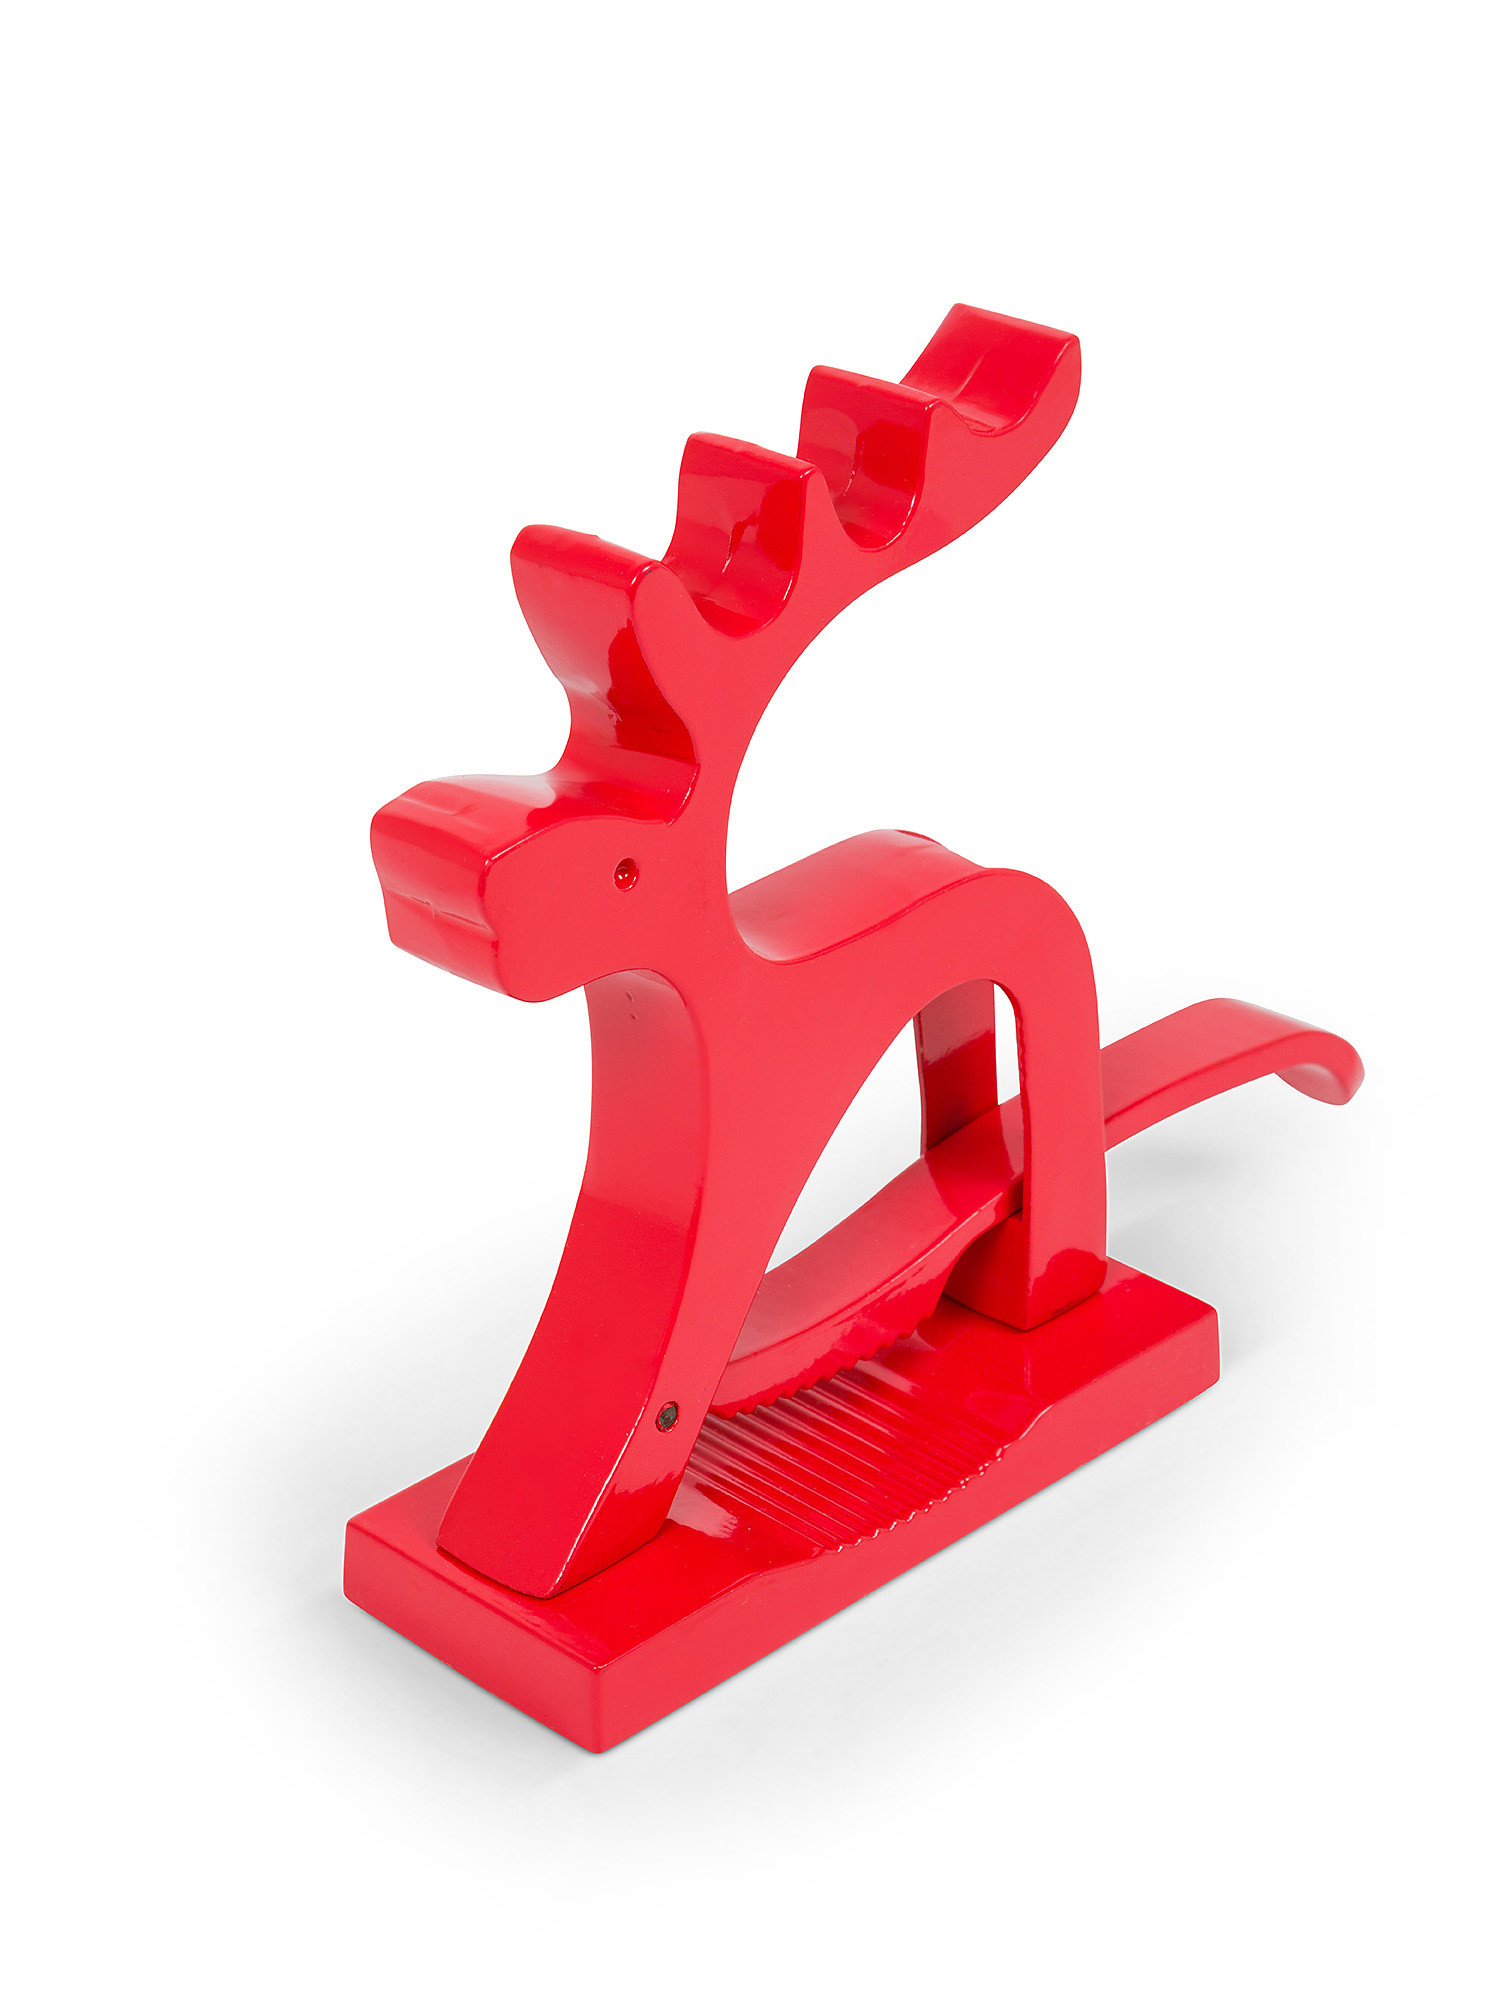 Aluminum reindeer nutcracker, Red, large image number 1